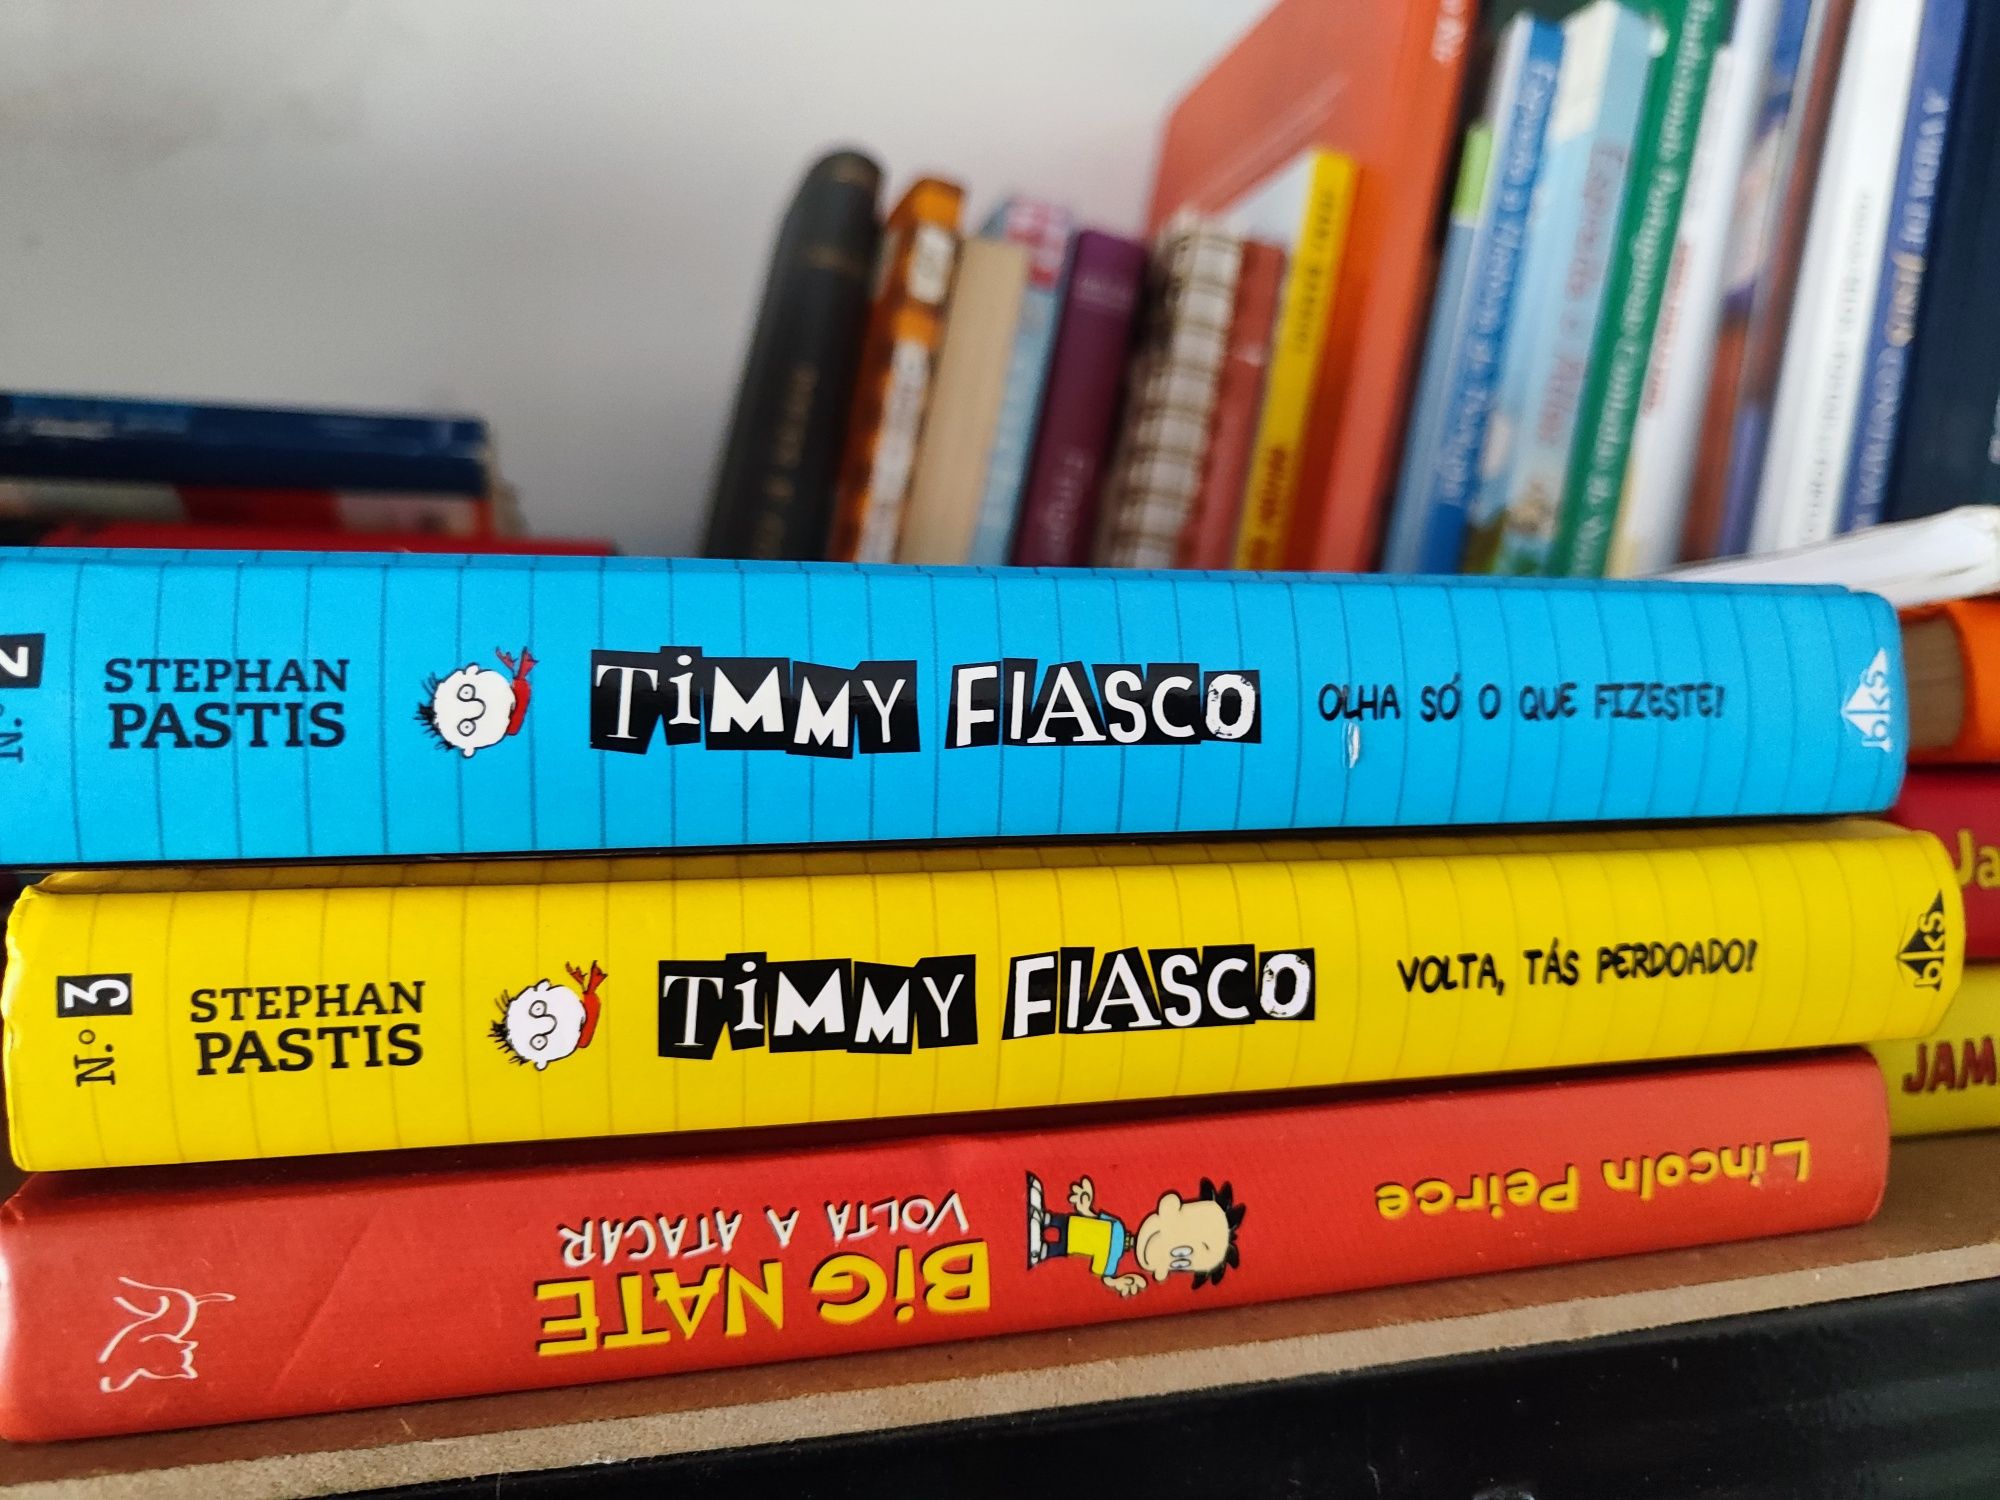 Timmy Fiasco, vendo cada a 3 euros